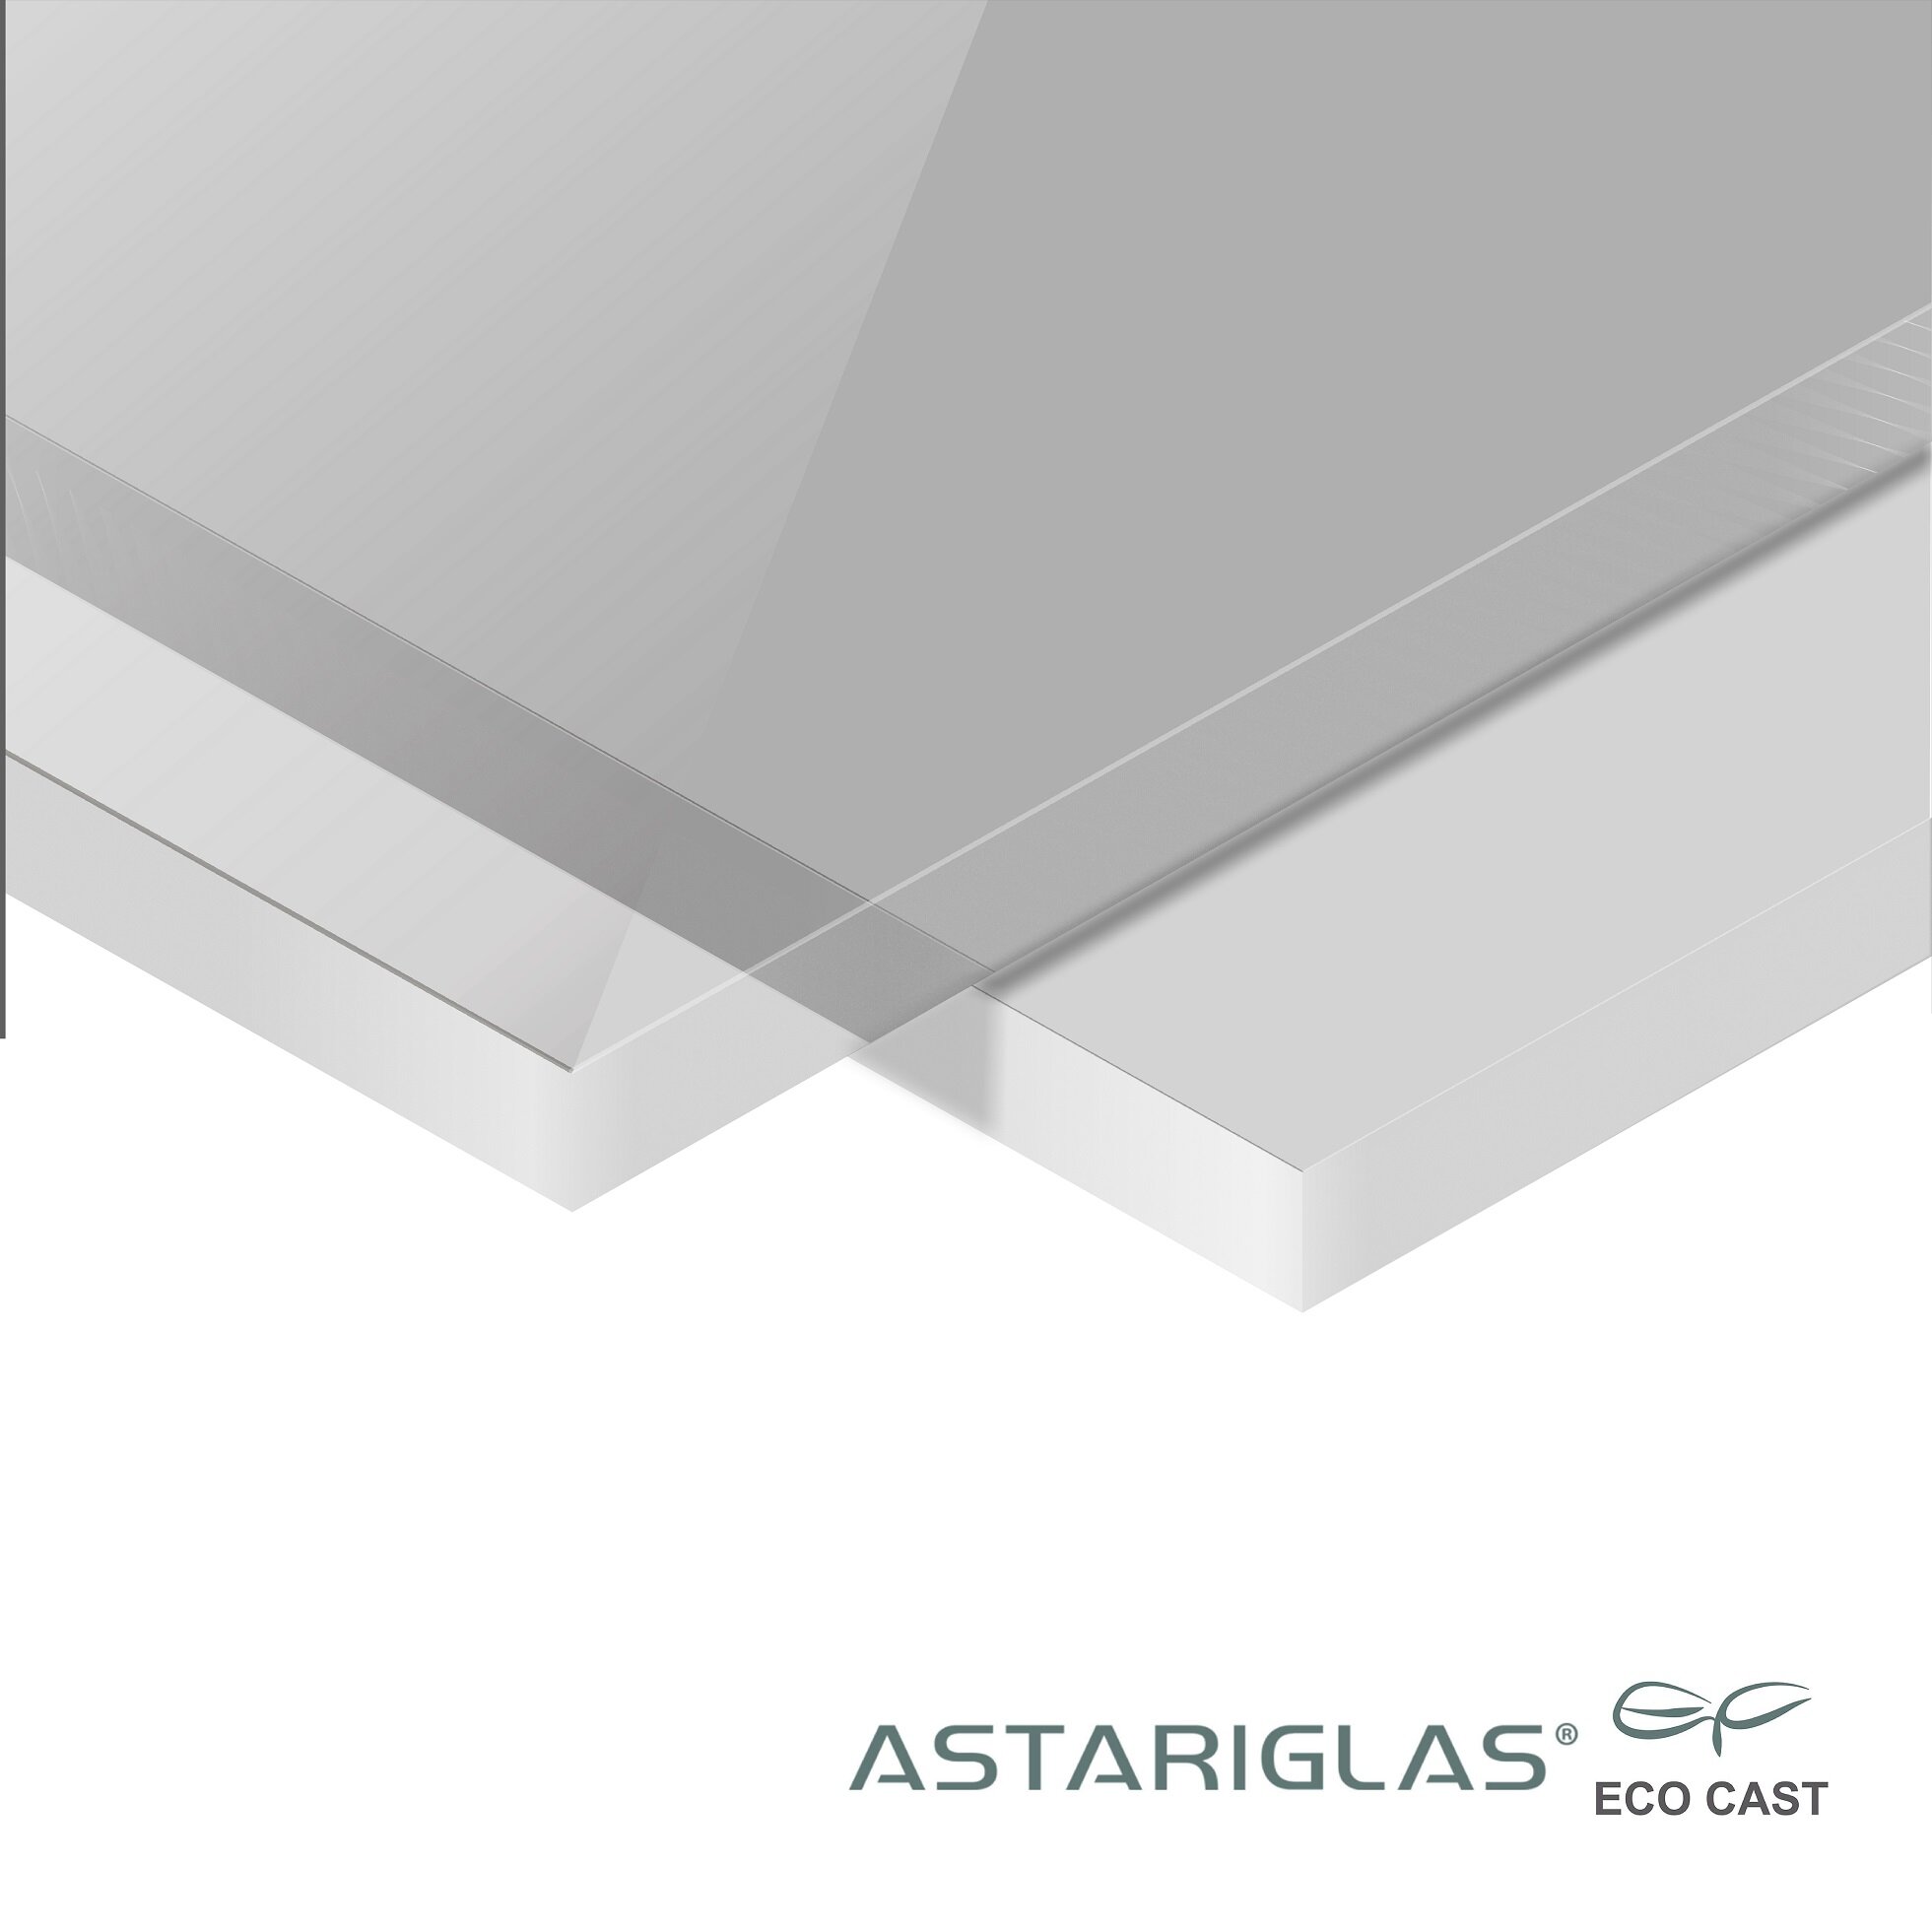 PMMA Eco Cast 424st wit opaal LT55% Astariglas mat/glos